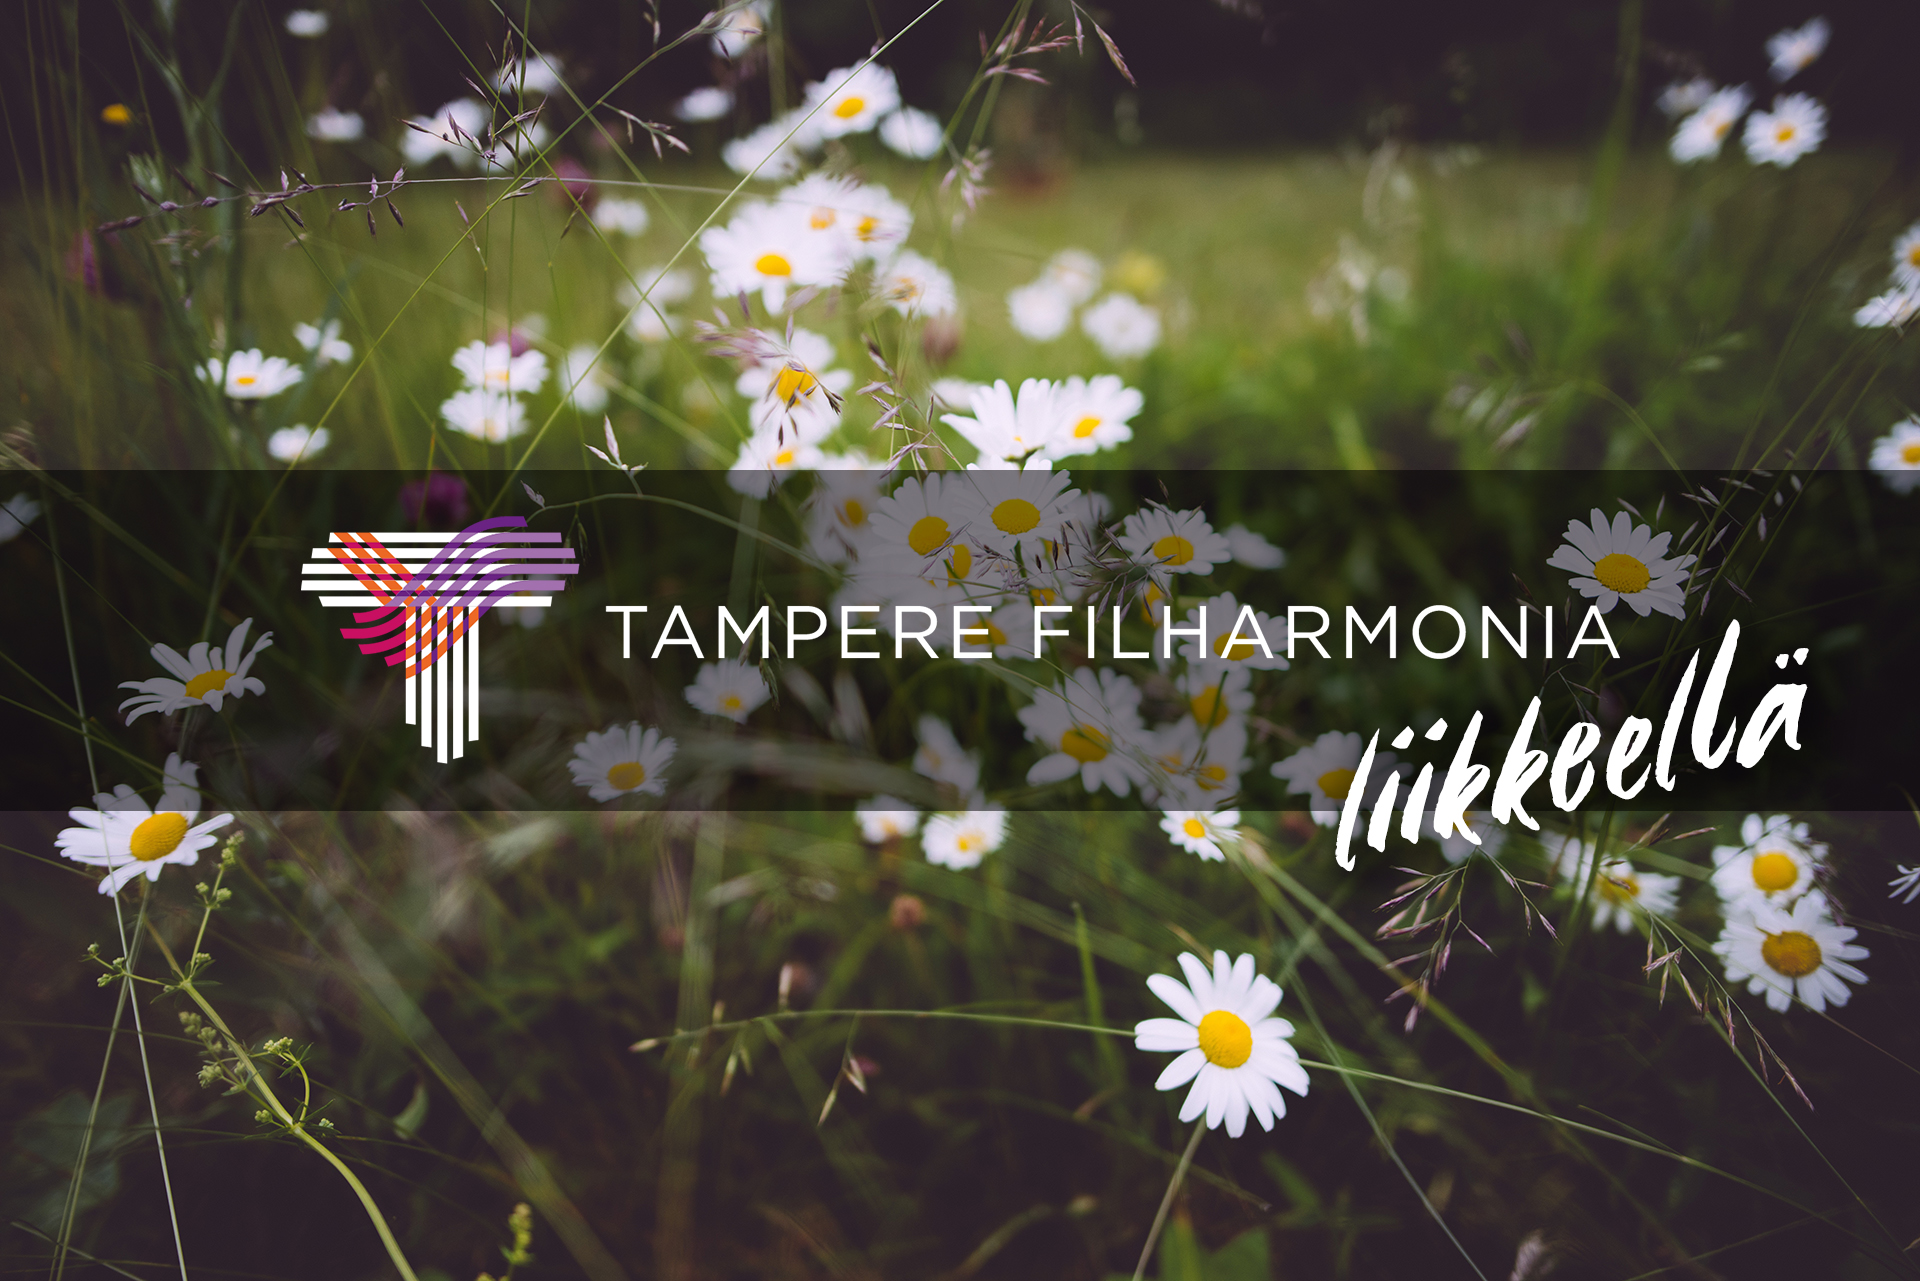 Tampere Filharmonian puupuhaltimista koostuva yhtye konsertoi Kimmo Pyykkö -taidemuseossa keskiviikkona 12.8.2020.